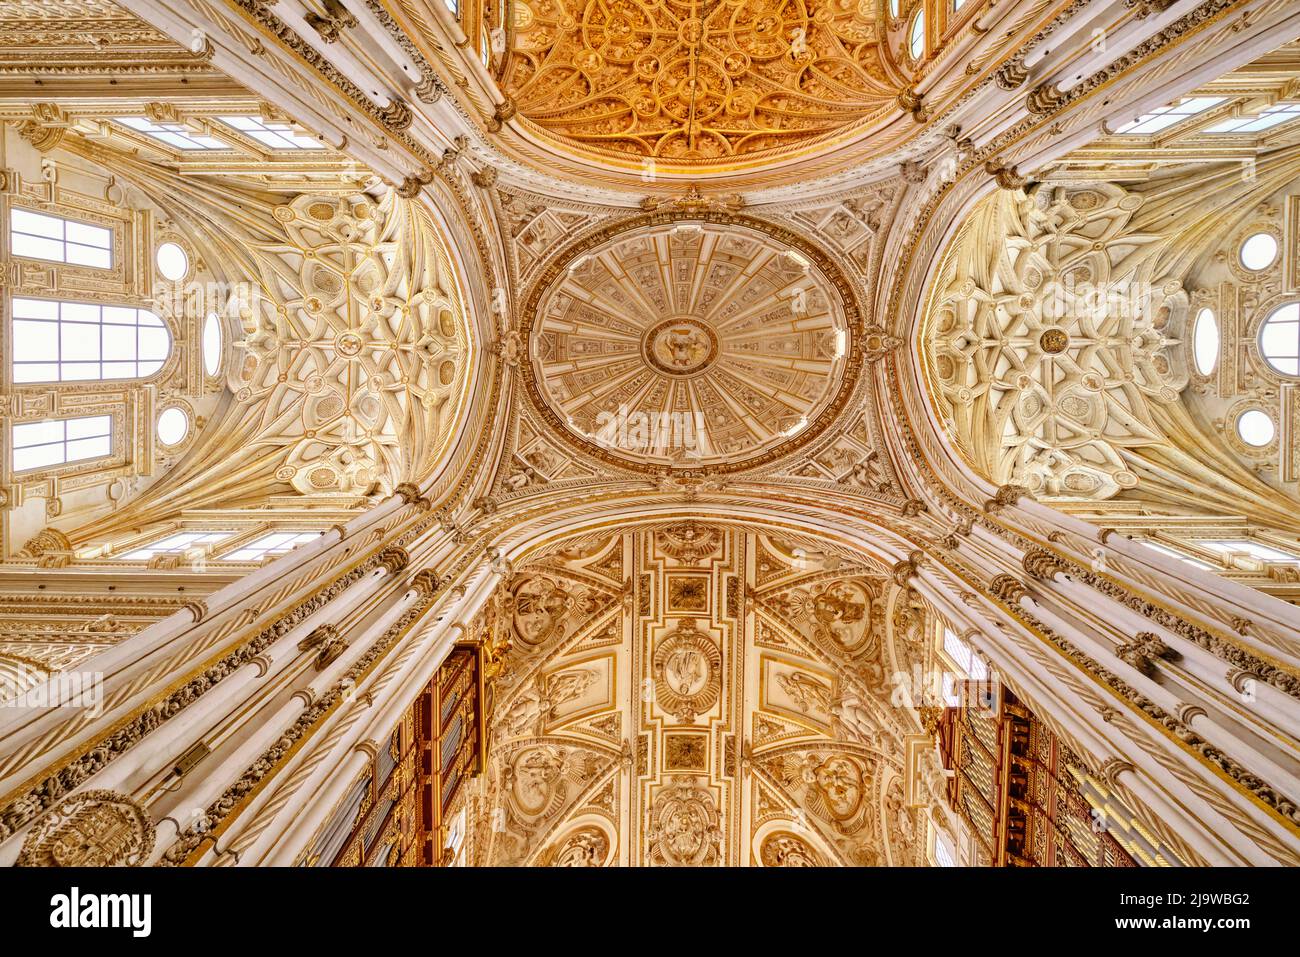 Das Innere der Mezquita-Kathedrale (Moschee-Kathedrale) von Cordoba, ein UNESCO-Weltkulturerbe. Andalusien, Spanien Stockfoto